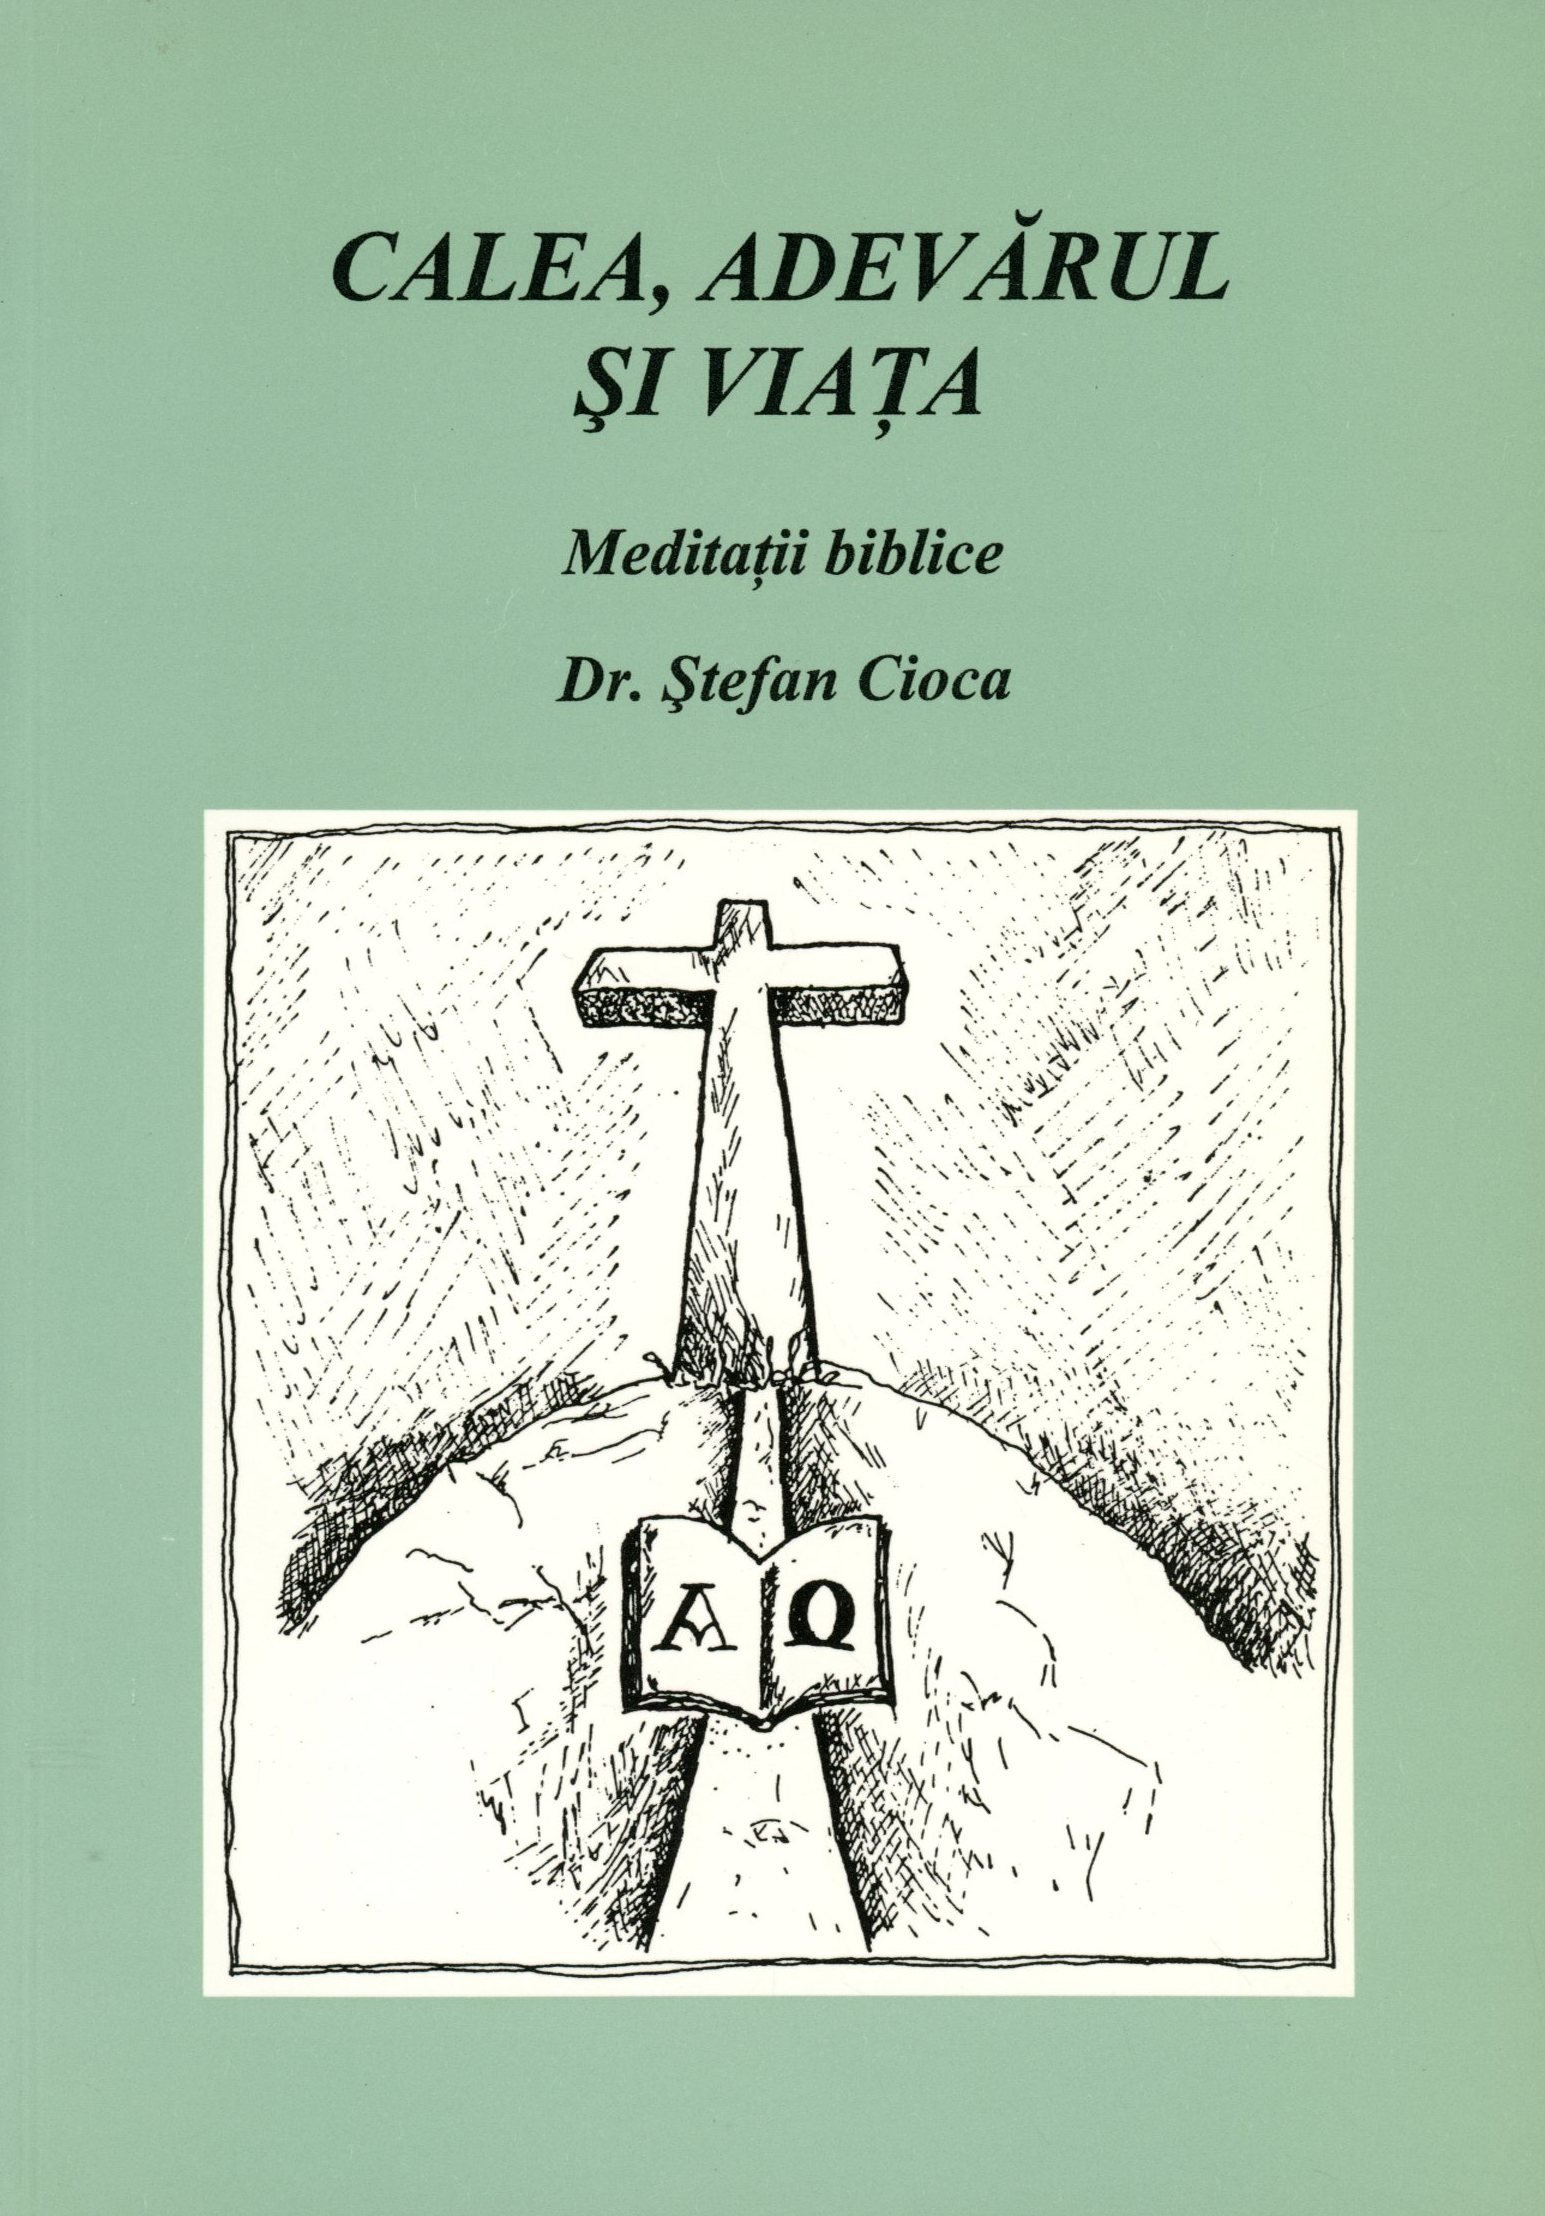 Dr. Ștefan Cioca (Erkel Ferenc Múzeum és Könyvtár, Gyula CC BY-NC-SA)